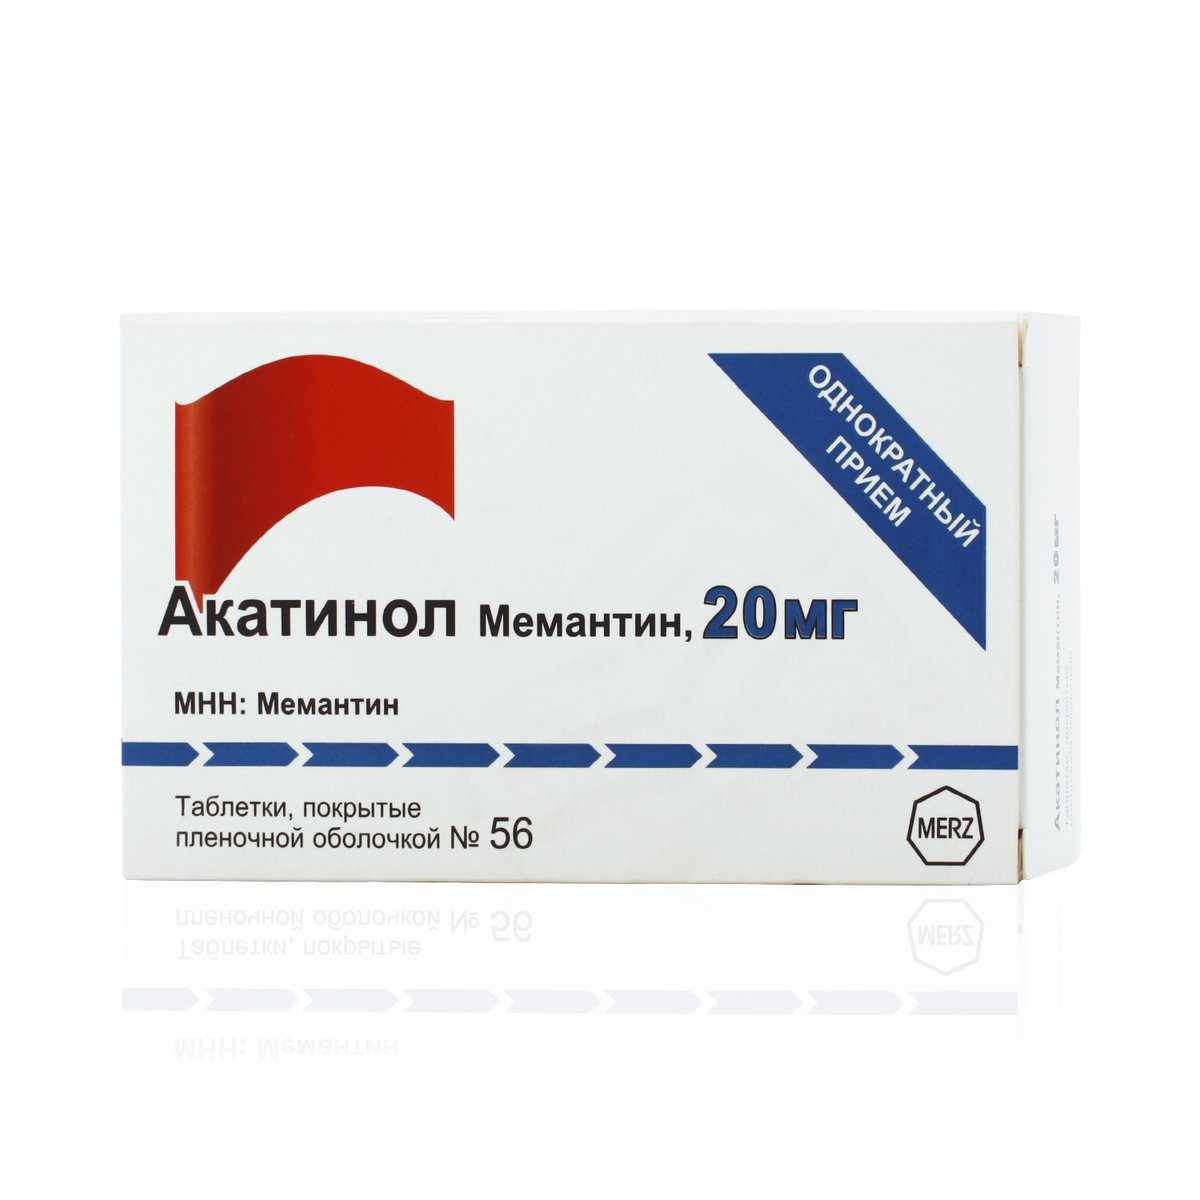 Акатинол мемантин (таблетки, 56 шт, 20 мг) - цена,  онлайн в .